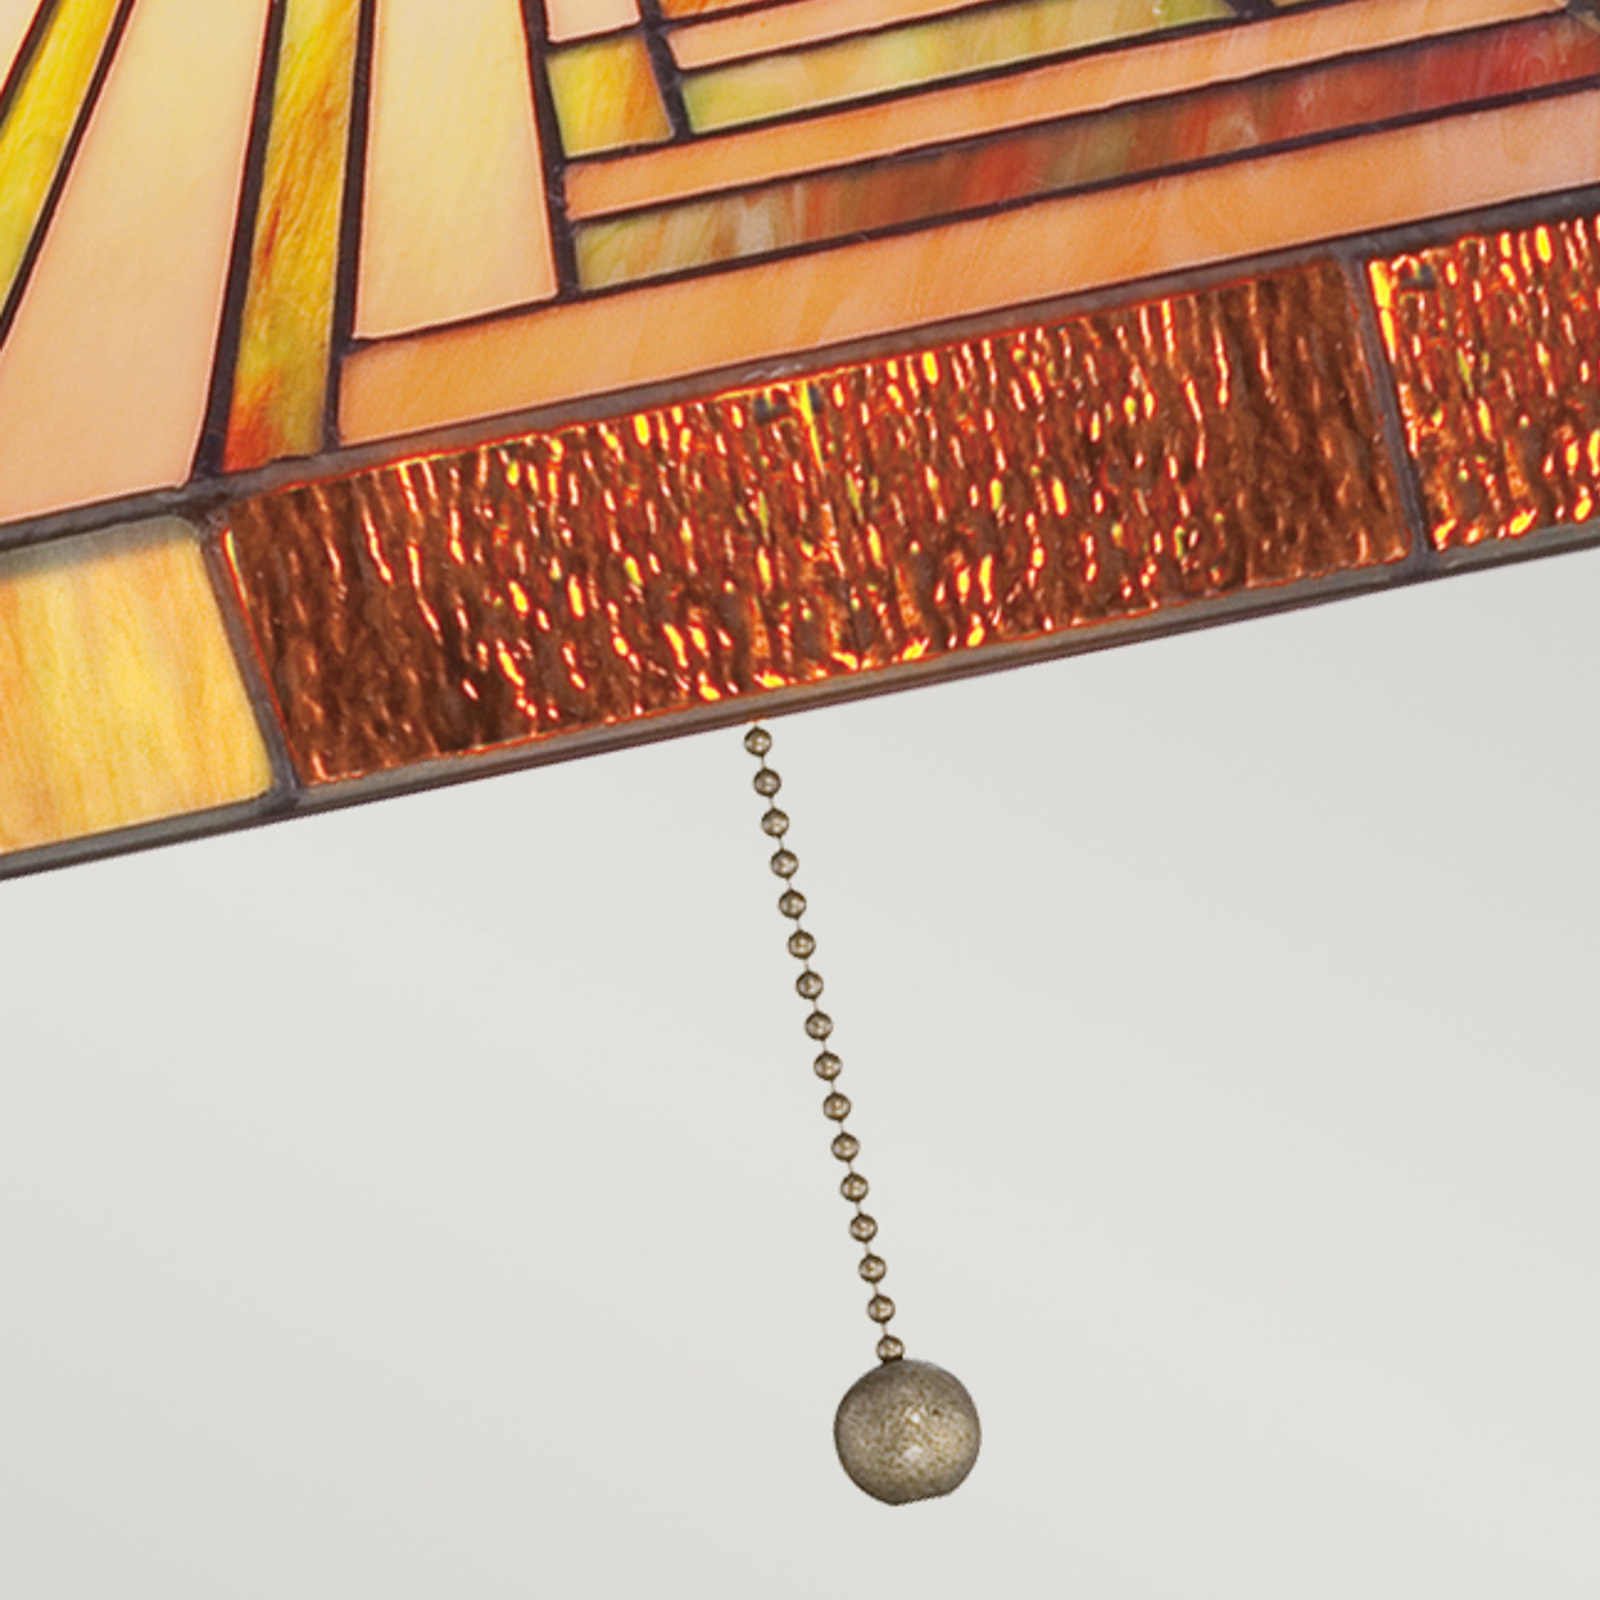 Stephen hængelampe med skærm i Tiffany-stil